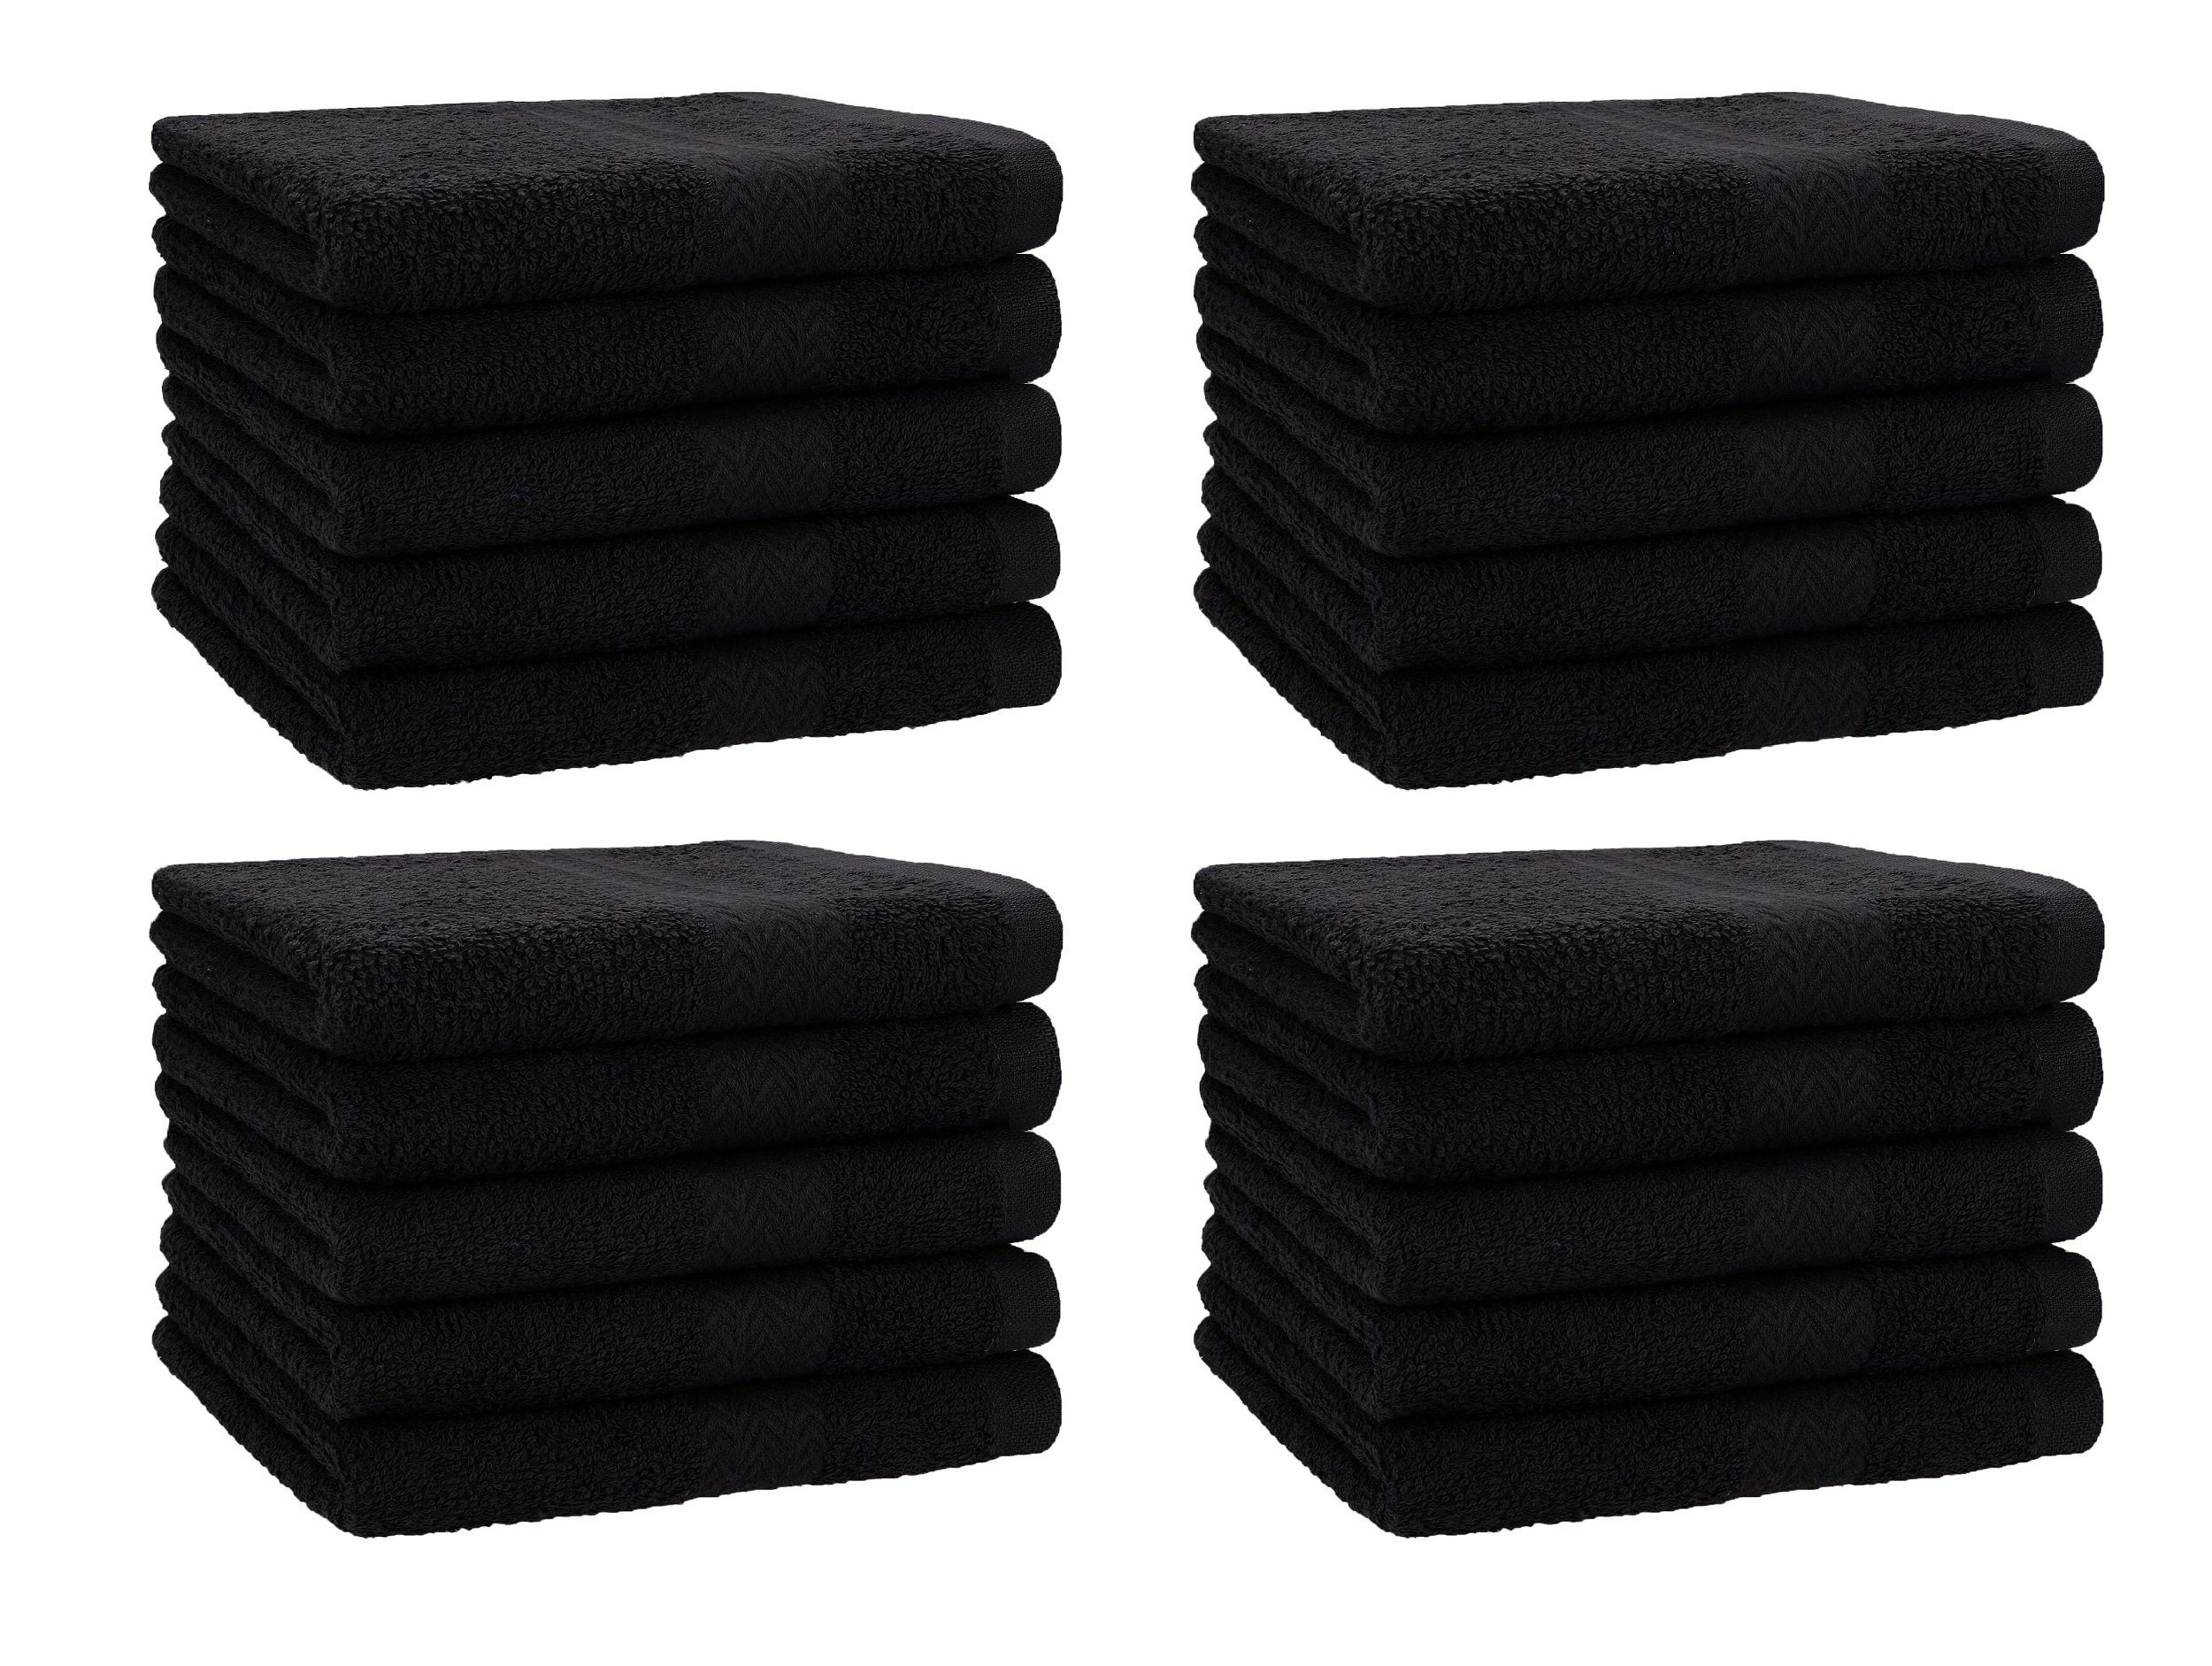 Betz Gästehandtücher 20 Stück Gästehandtücher Premium 100% Baumwolle Gästetuch-Set 30x50 cm Farbe schwarz, 100% Baumwolle